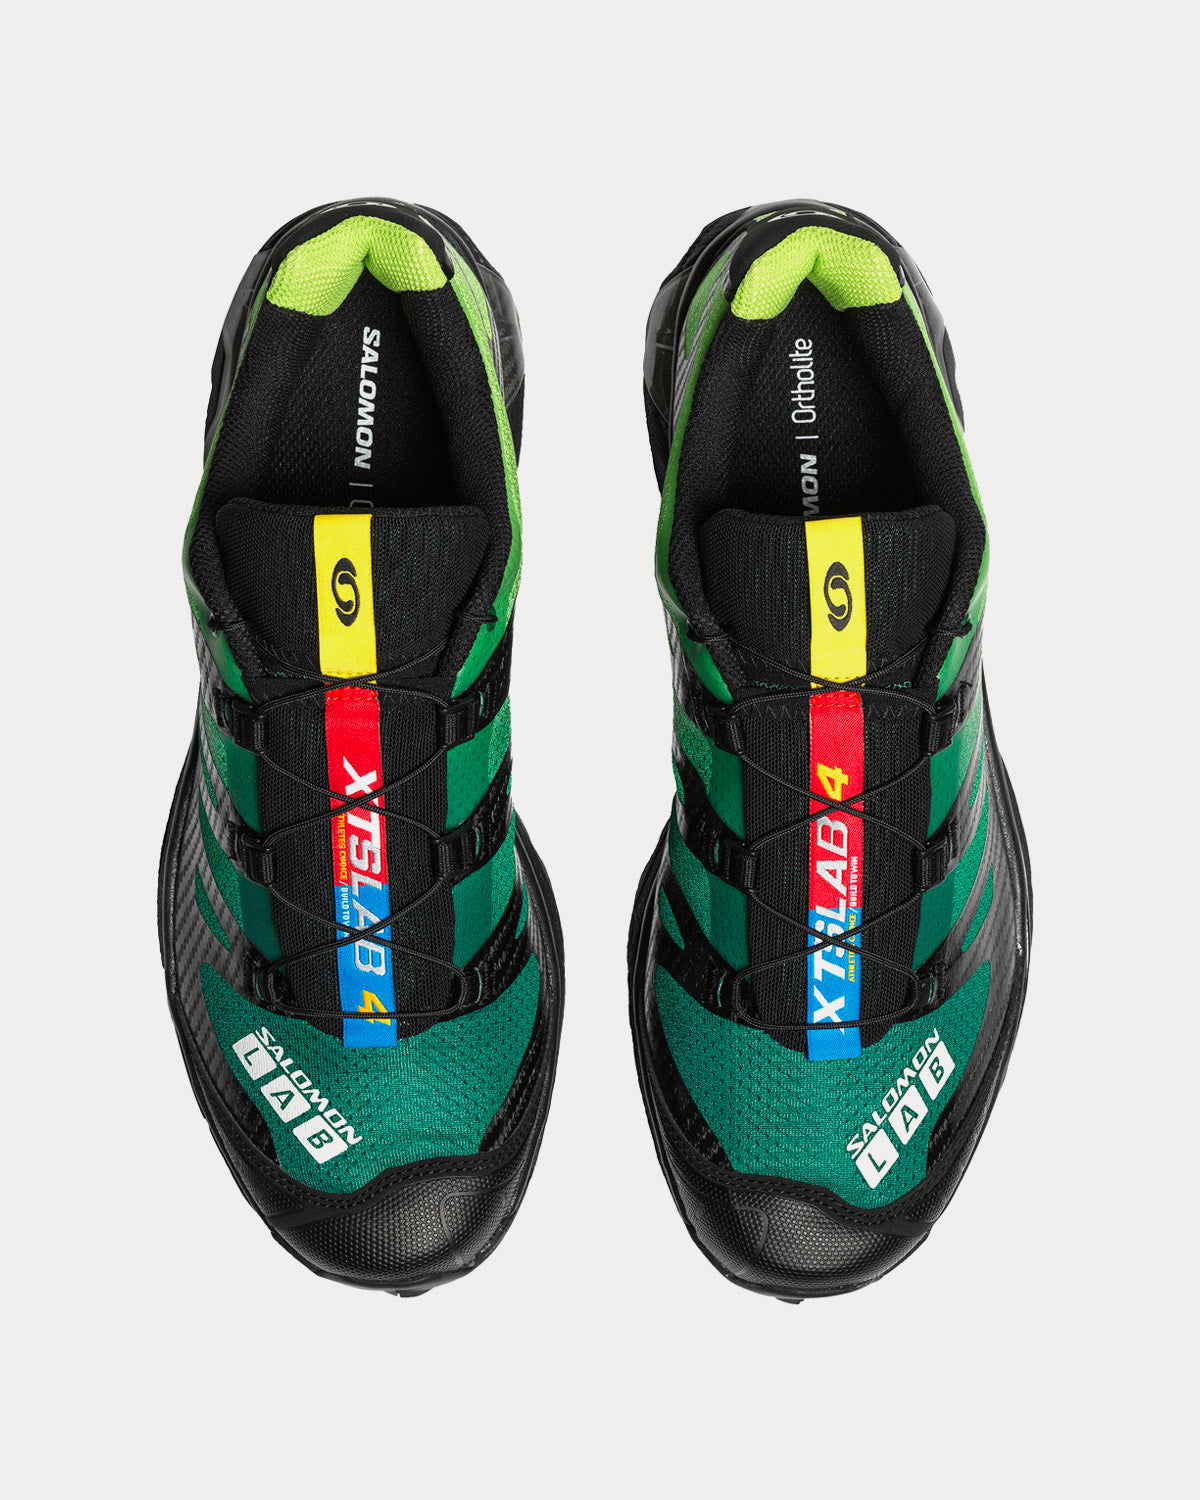 Salomon XT-4 OG Eden / Bright Lime Green / White Low Top Sneakers ...